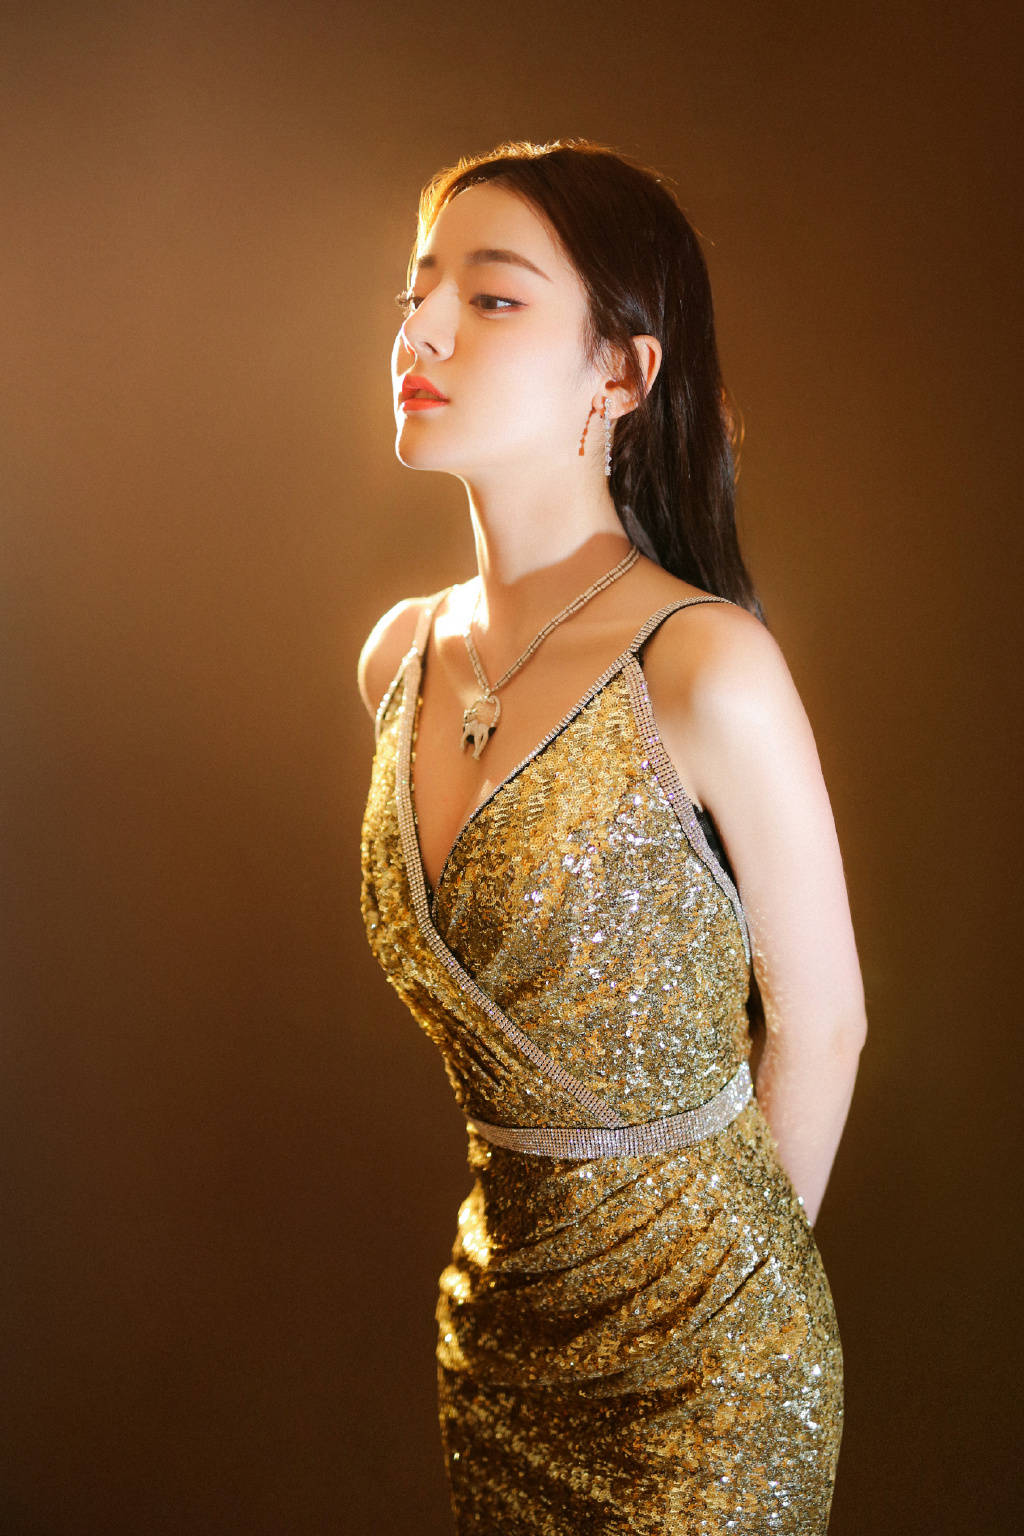 迪丽热巴壁纸:一袭金色吊带裙的热巴,婀娜多姿唯美优雅